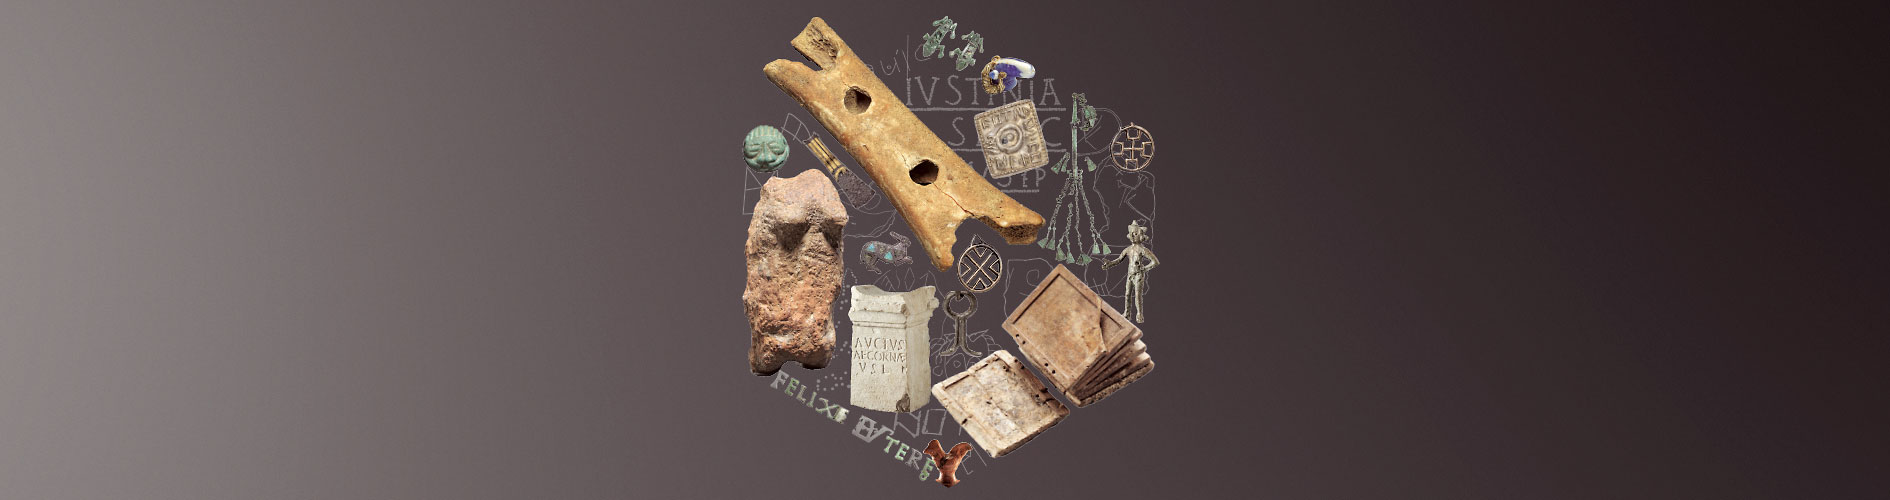 Enlarge image: Verschiedene archäologische Objekte wie eine Knochenflöte, Steinfiguren, Schmuck und ein altertümliches Buch zu einem Kreis angeordnet